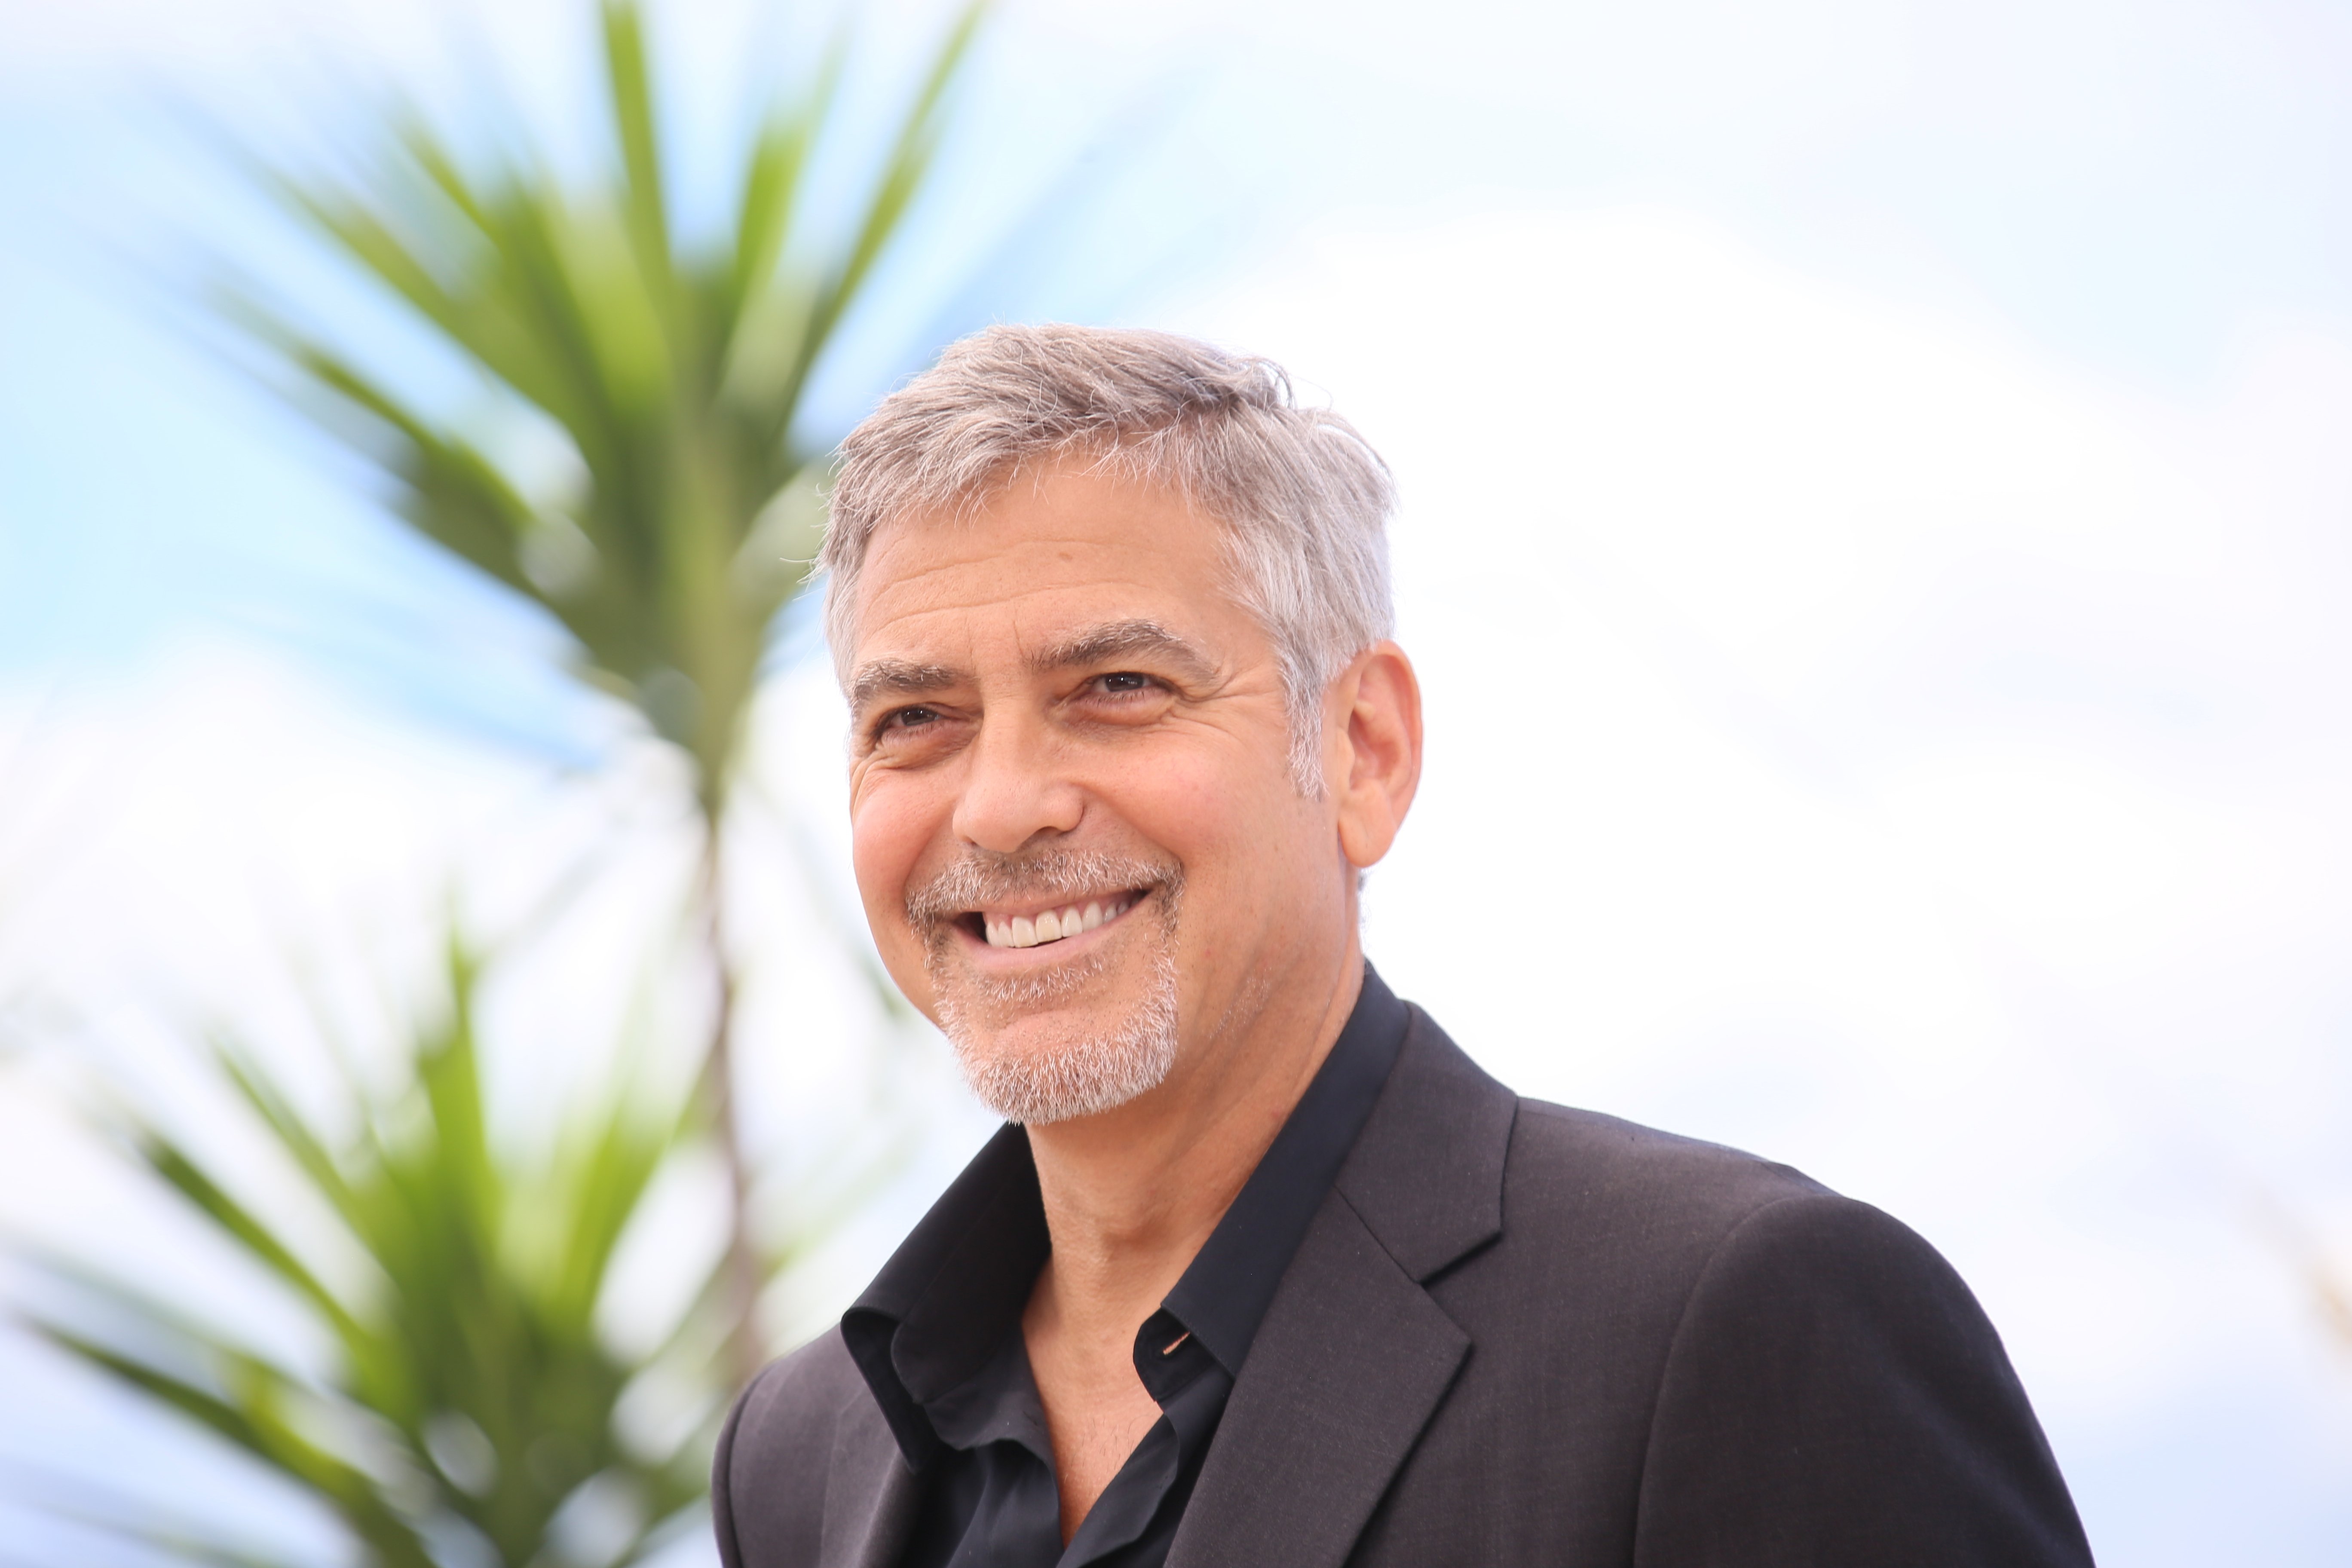 George Clooney asiste a la sesión de fotos del "Monstruo del dinero" durante el 69º Festival de cine de Cannes en el Palais des Festivals en 2016 en Cannes, Francia. Fuente: Shutterstock